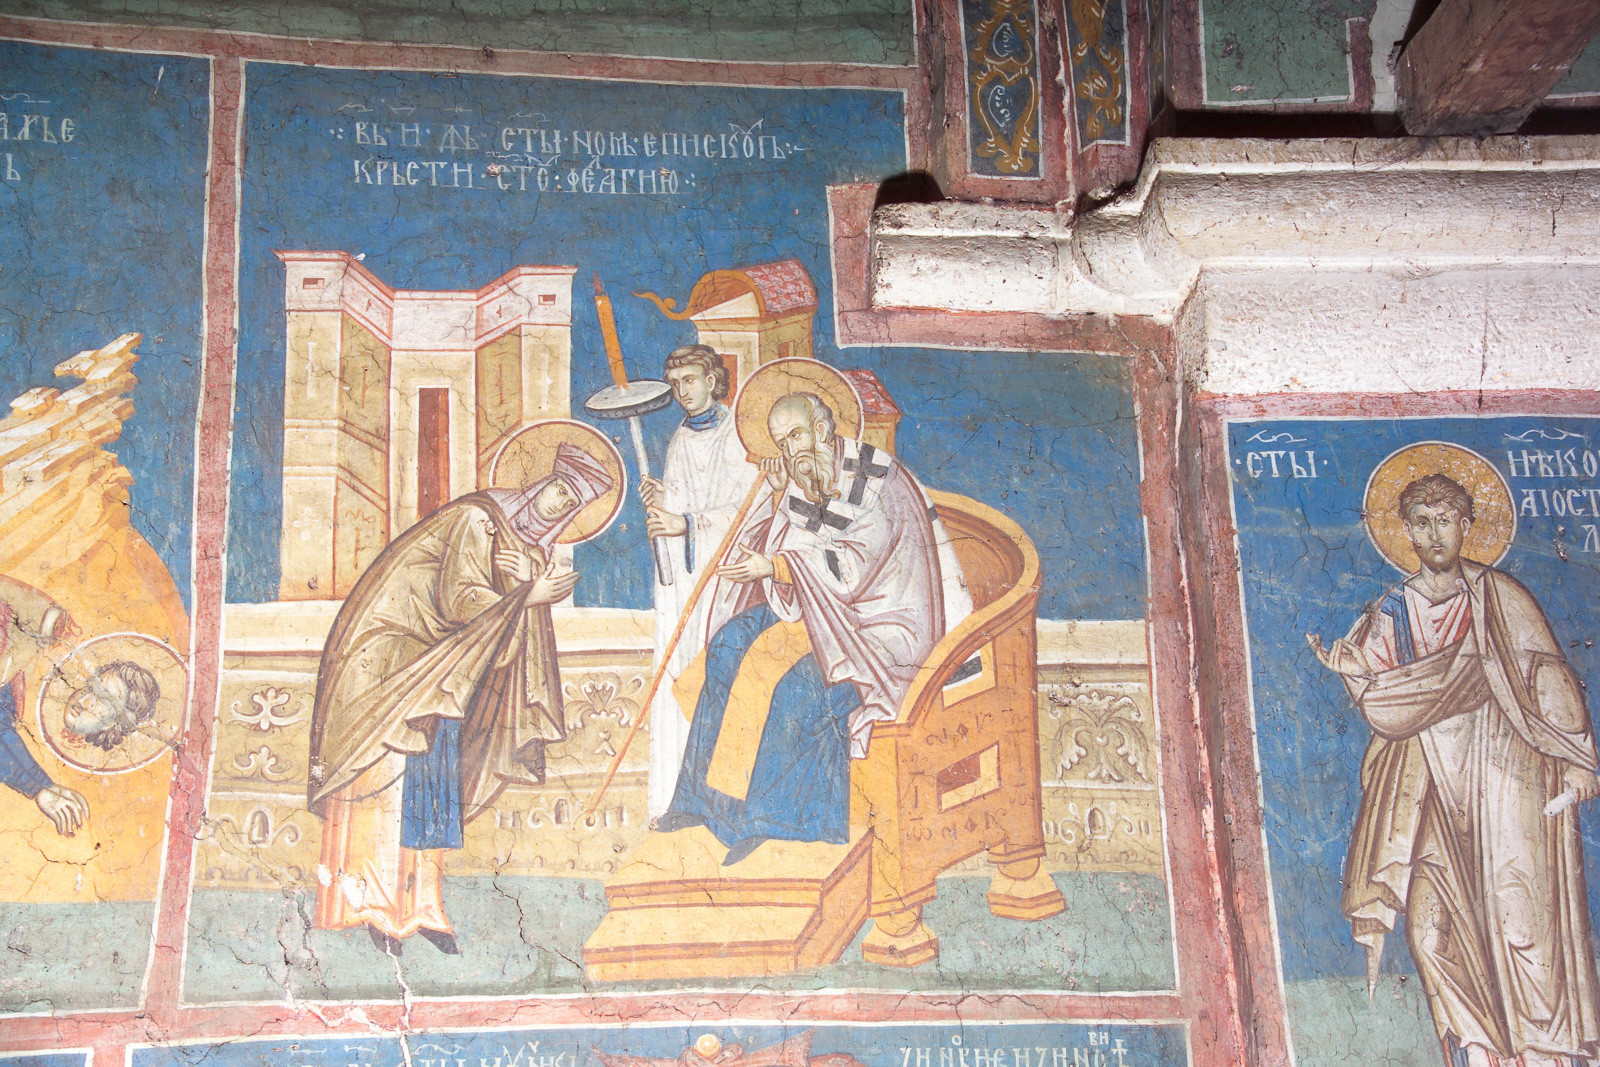 7IV-3 October 8 - St. Pelagia and St. Nonus (scene)